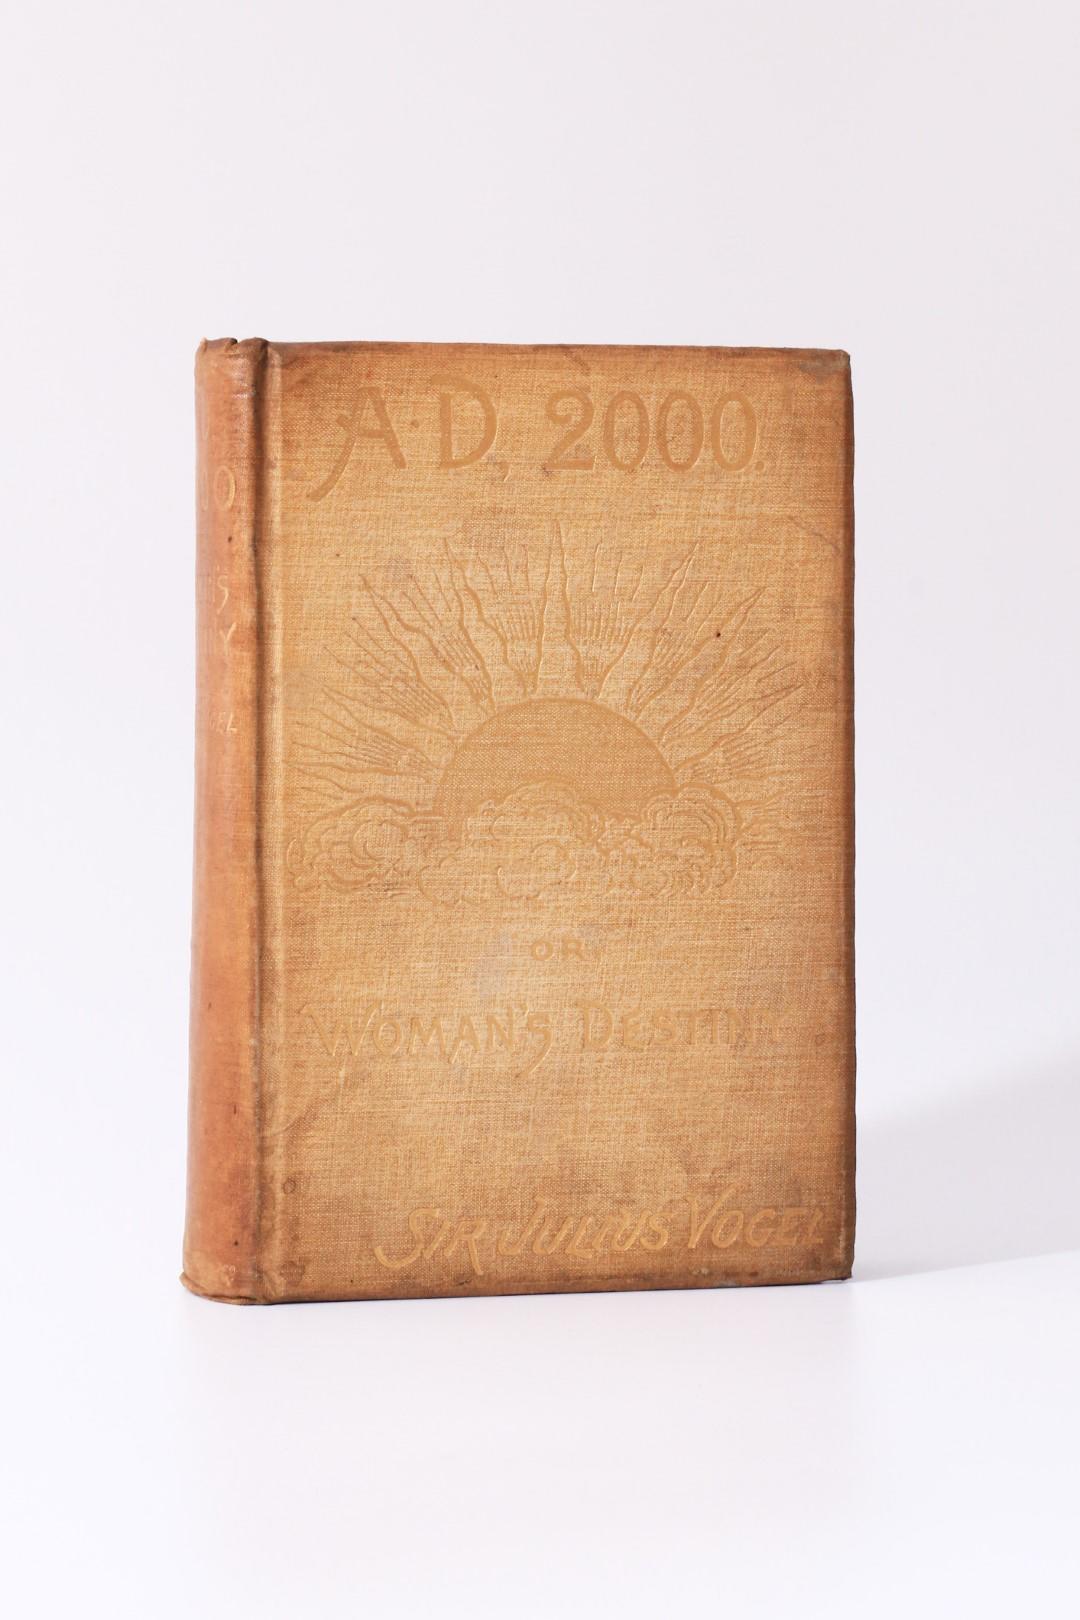 Julius Vogel - Anno Domini 2000 or Woman's Destiny - Hutchinson, 1889, First Edition.